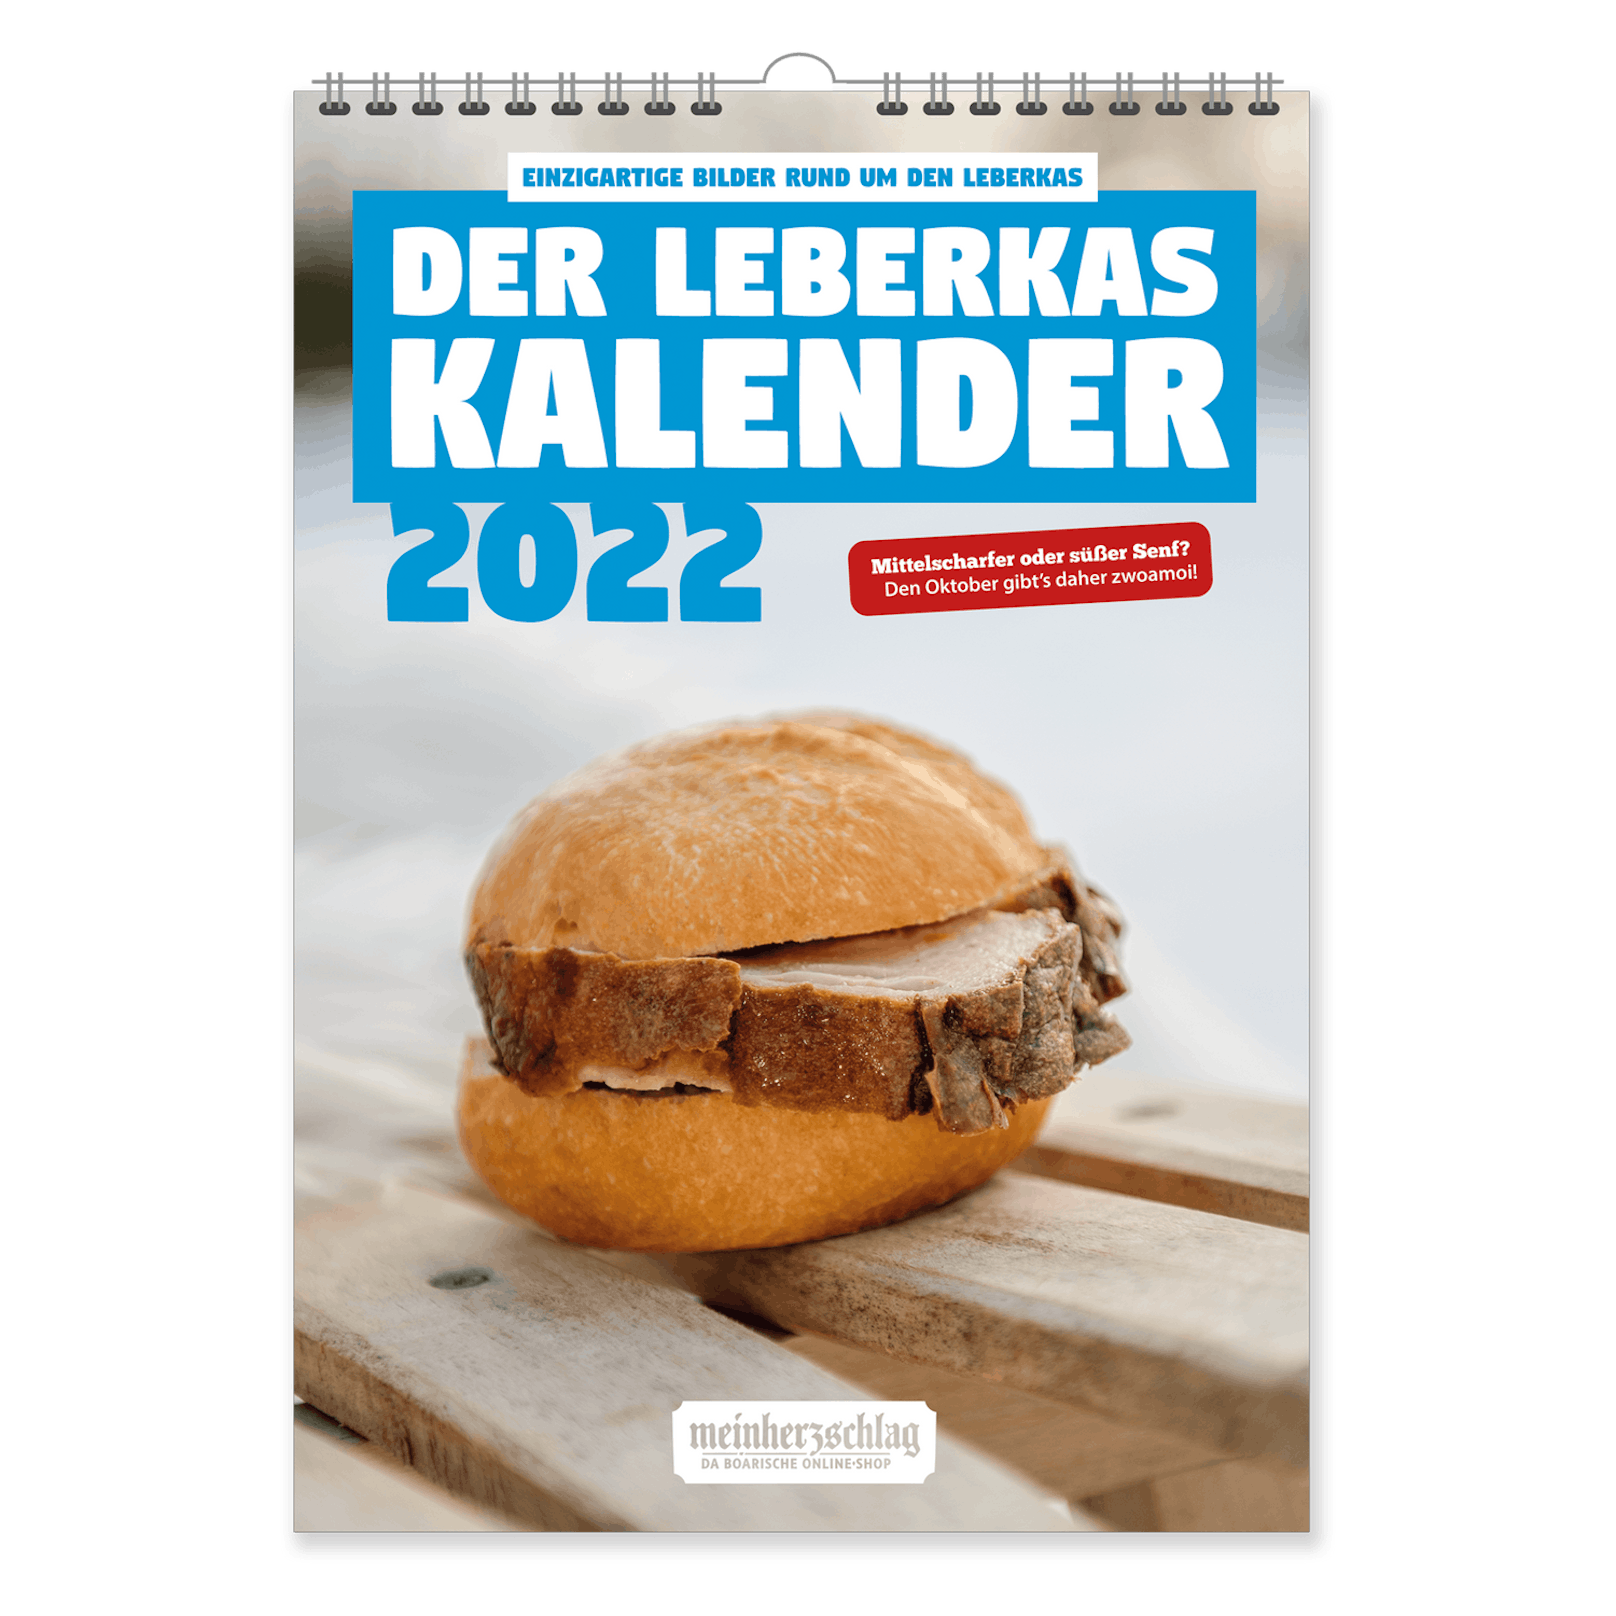 Der Leberkas-Kalender 2022 findet reißenden Absatz.